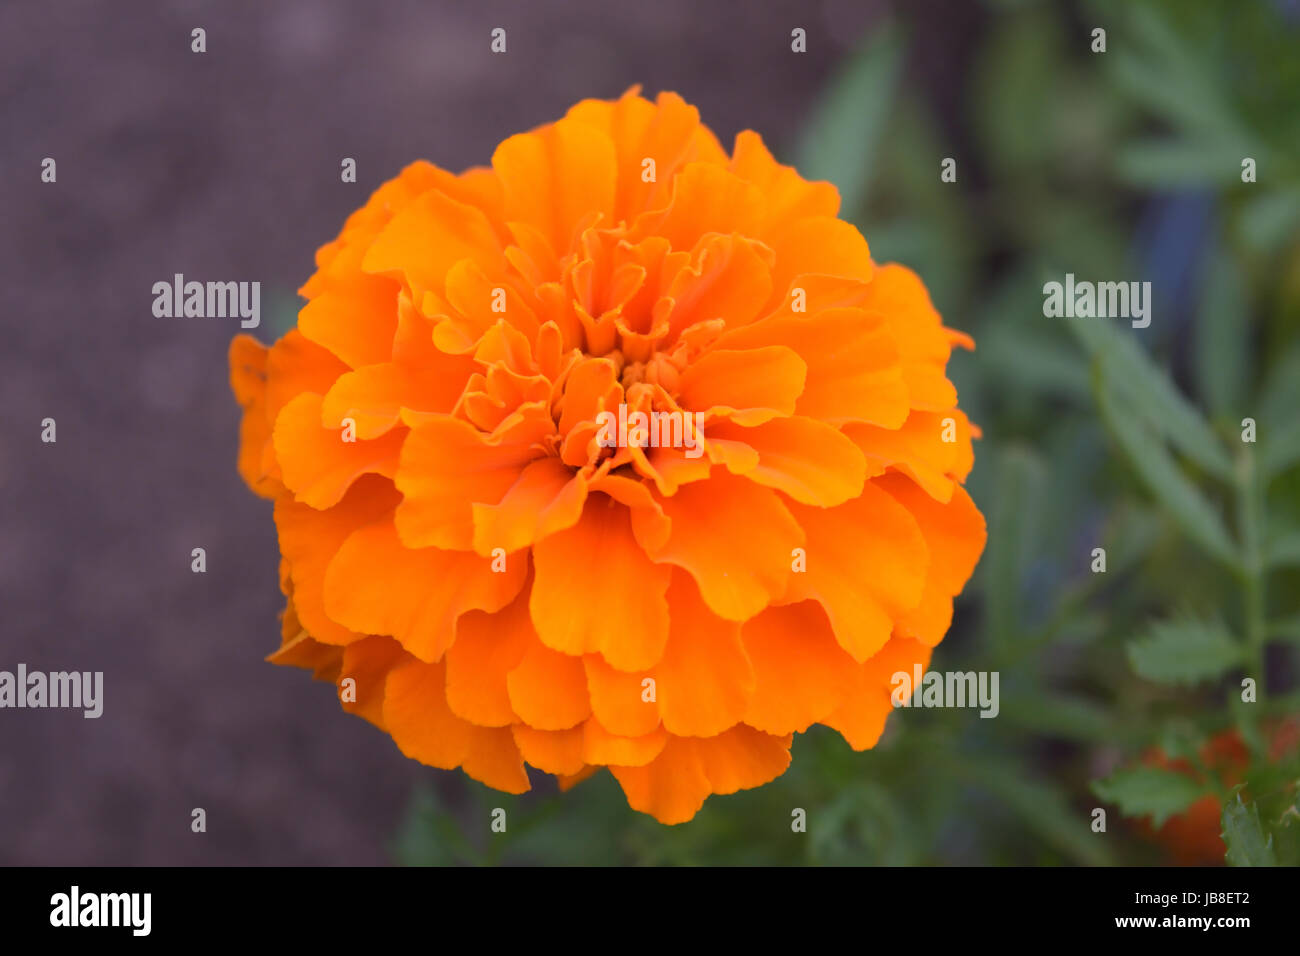 Leuchtend orange Ringelblume Blütenkopf voll blüht. Ist eine kurzlebige aromatische Blütenpflanze in der Familie der Gänseblümchen mit medizinischen und pflanzlichen Anwendungen. Stockfoto